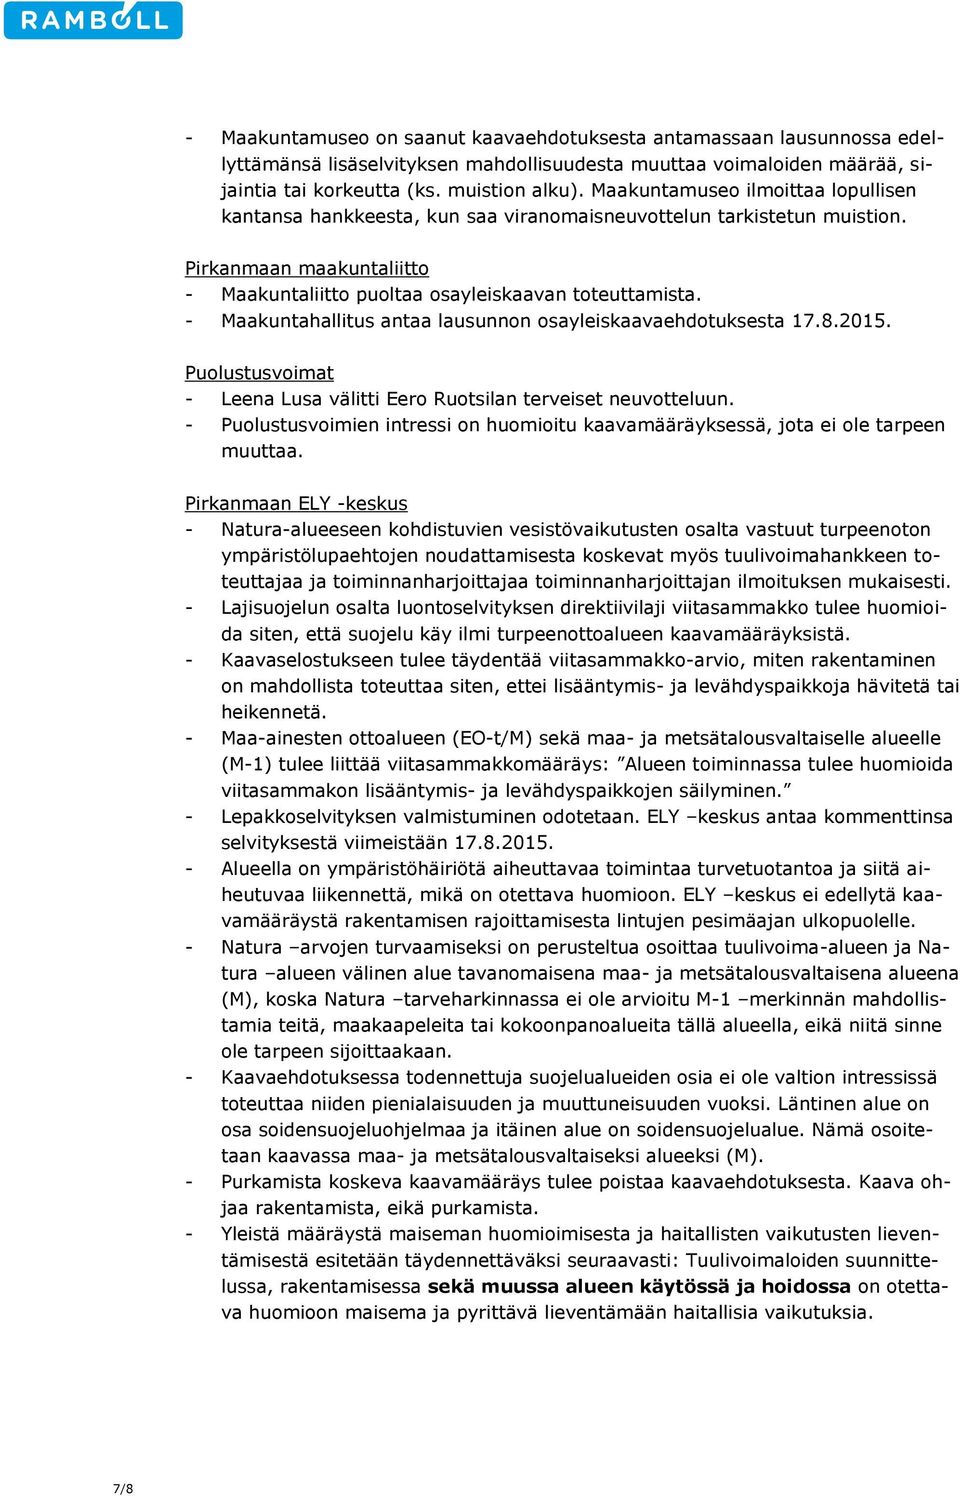 - Maakuntahallitus antaa lausunnon osayleiskaavaehdotuksesta 17.8.2015. Puolustusvoimat - Leena Lusa välitti Eero Ruotsilan terveiset neuvotteluun.